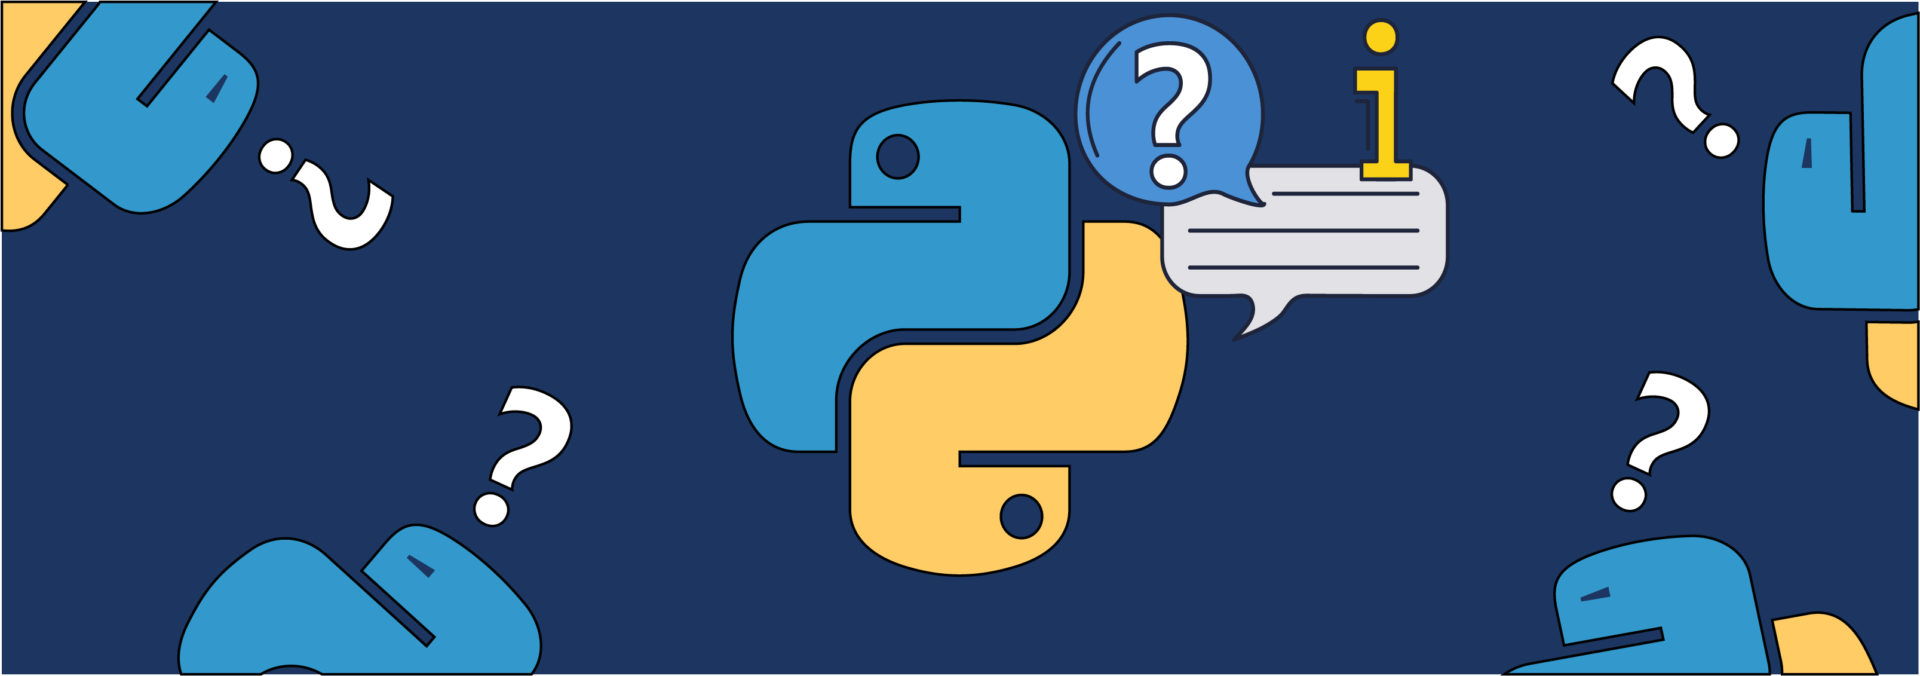 Обложка поста Короткие ответы на популярные вопросы о Python